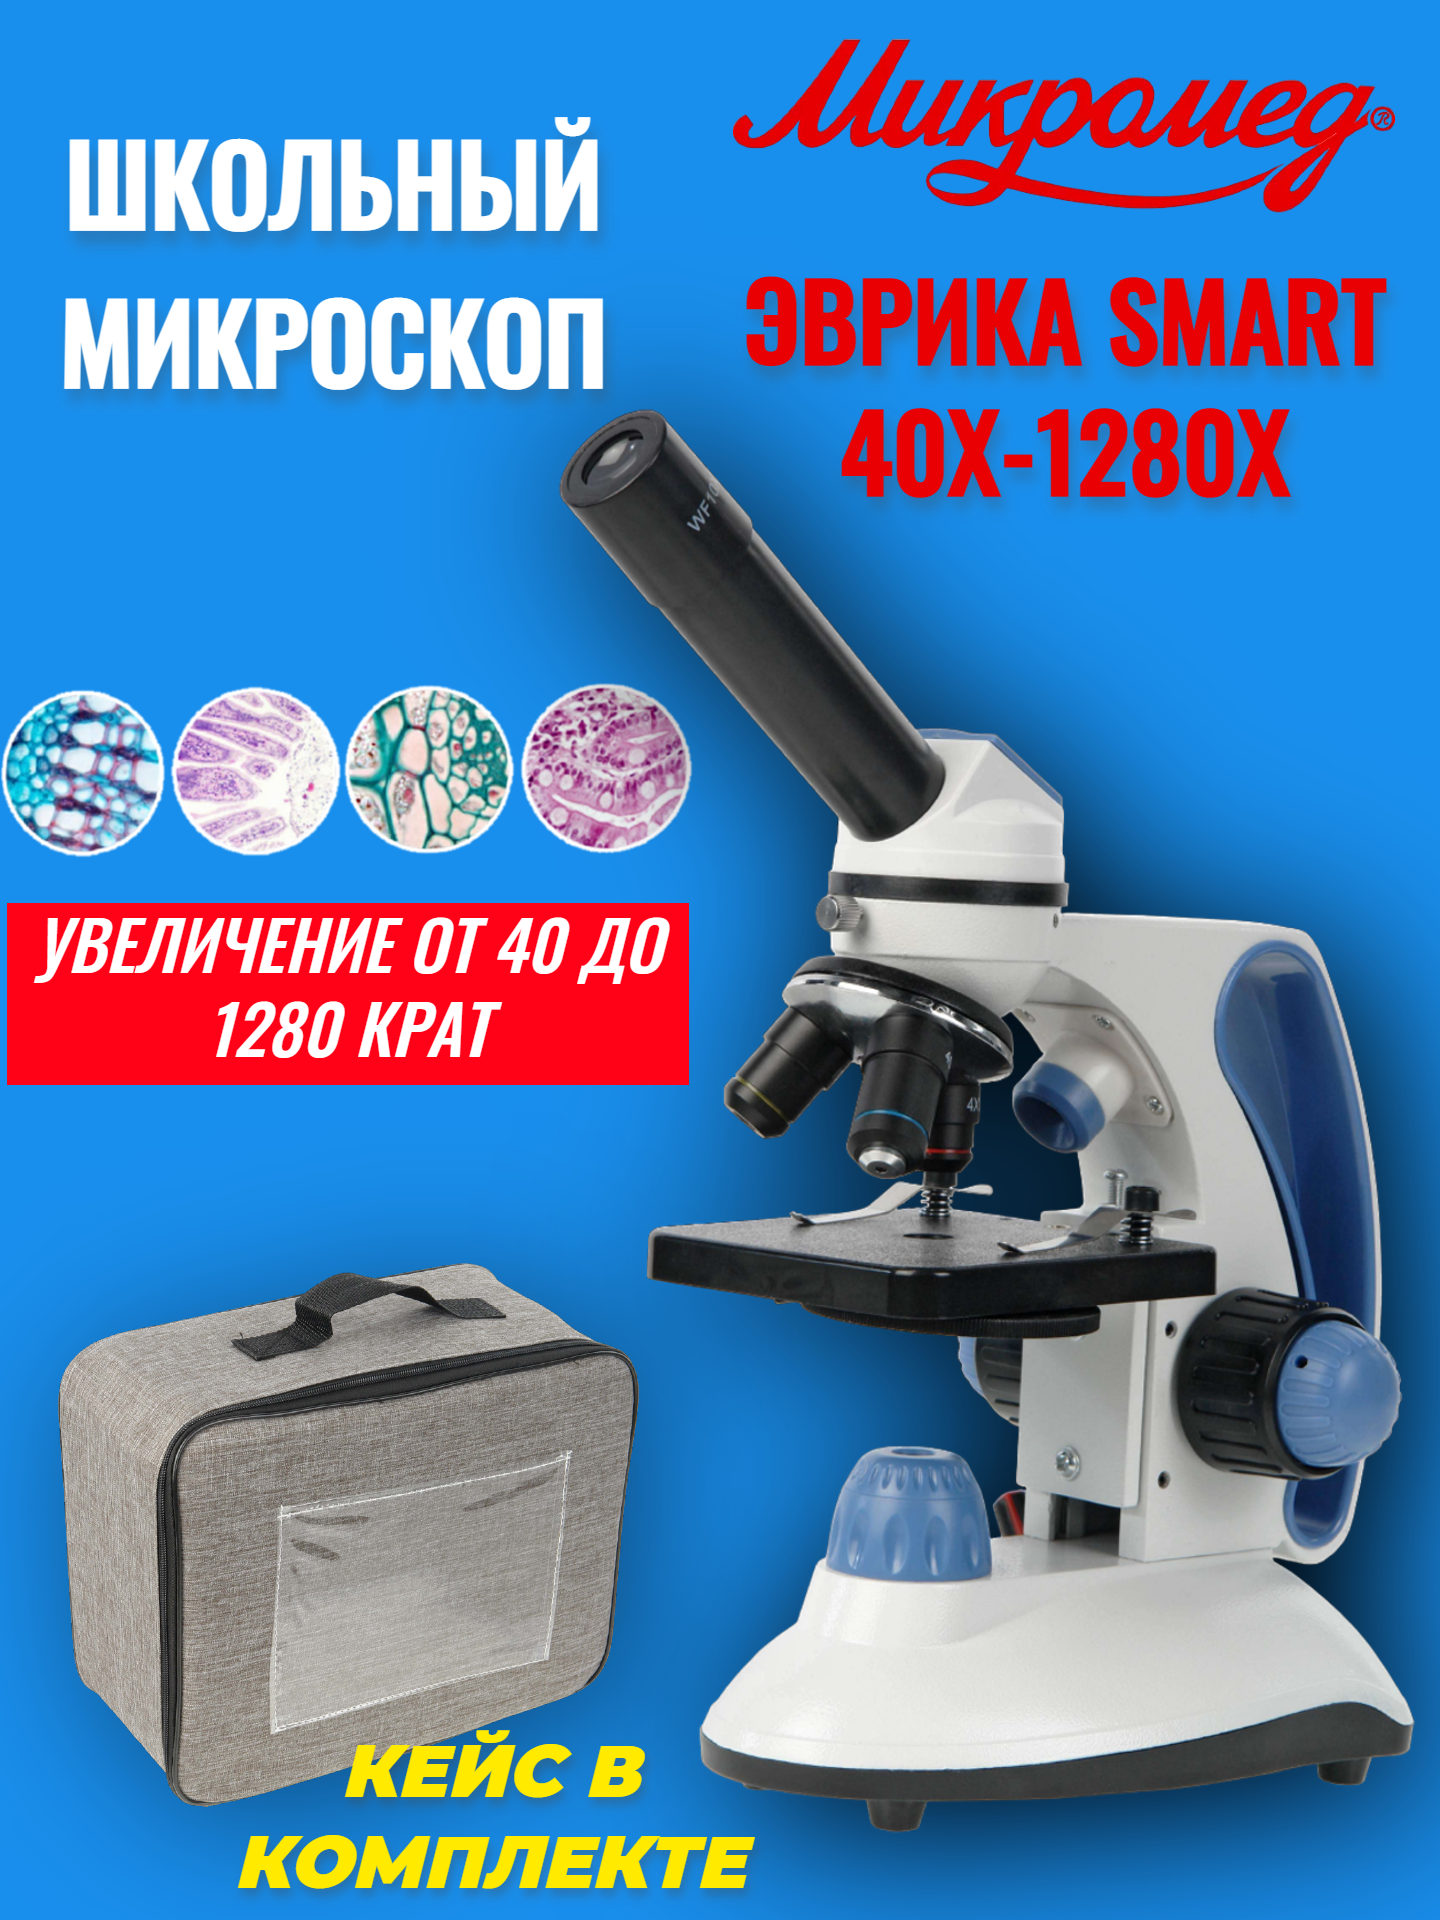 Микроскоп школьный учебный Микромед Эврика SMART 40х-1280х в текстильном кейсе микроскоп биологический микромед с 1 led 22186